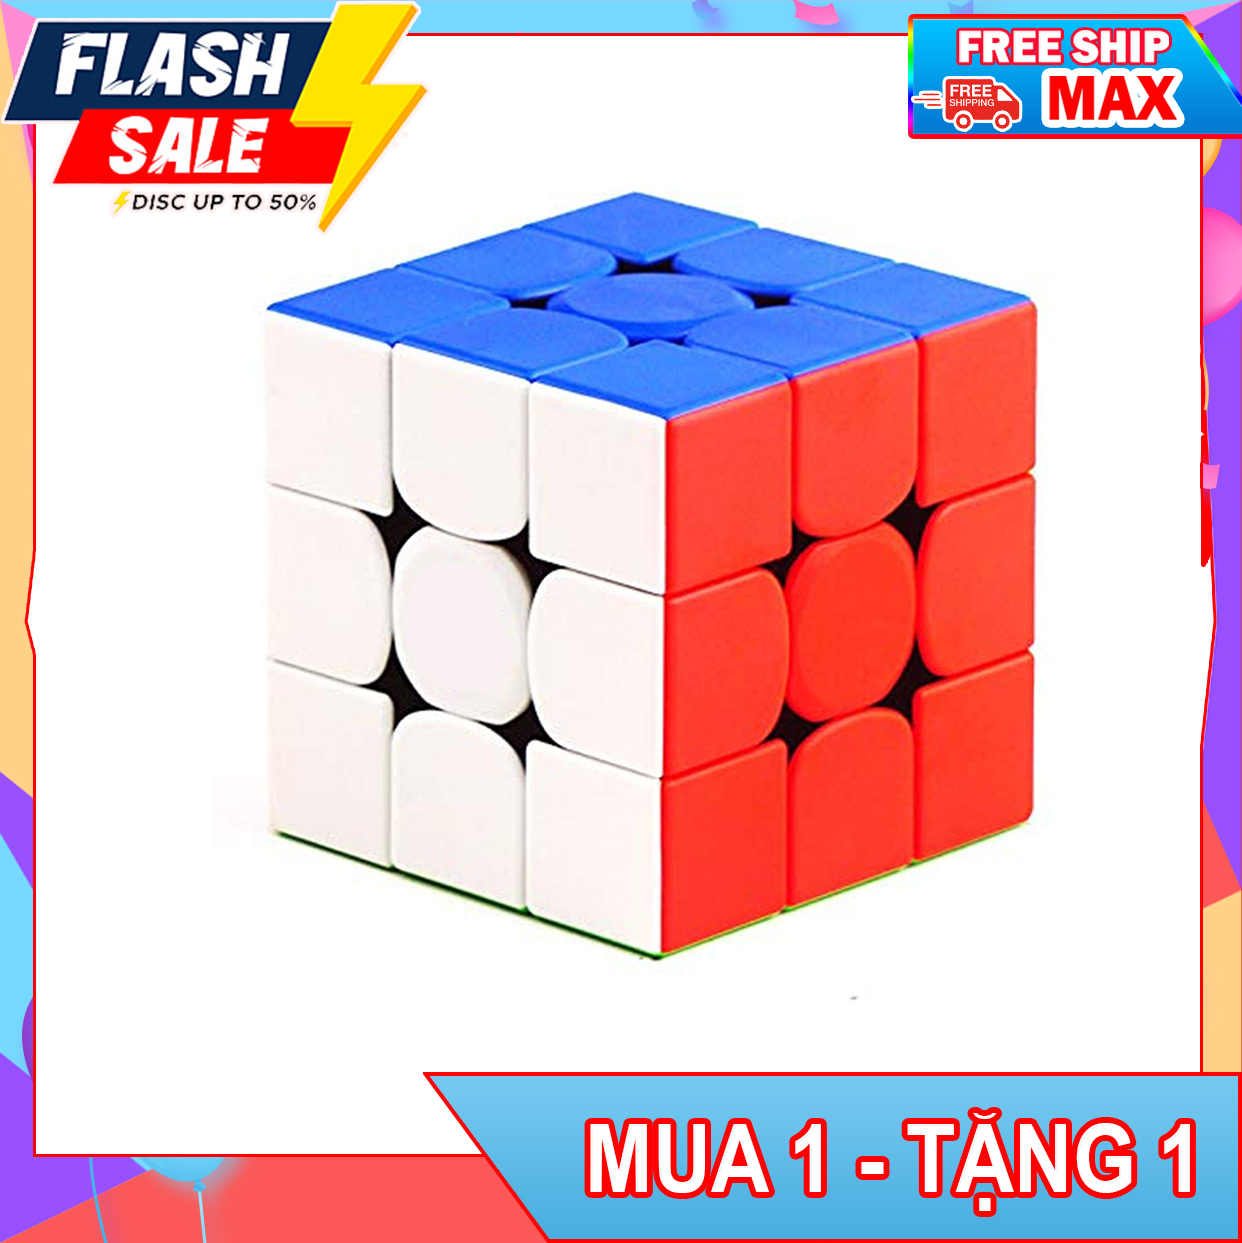 (FREE SHIP - TẶNG ĐẾ RUBIK ) Rubic 3x3 Nam Châm Stickerless - Rubik 3x3 MoYu 3M - RUBIK nam châm - rubik 3x3 nam châm - Rubik mod nam châm - mẫu thay thế Rubik Nam Châm 3X3 GAN 365M - rubik độ nam châm - rubik 3x3x3 có nam châmSeries MoYu M Me